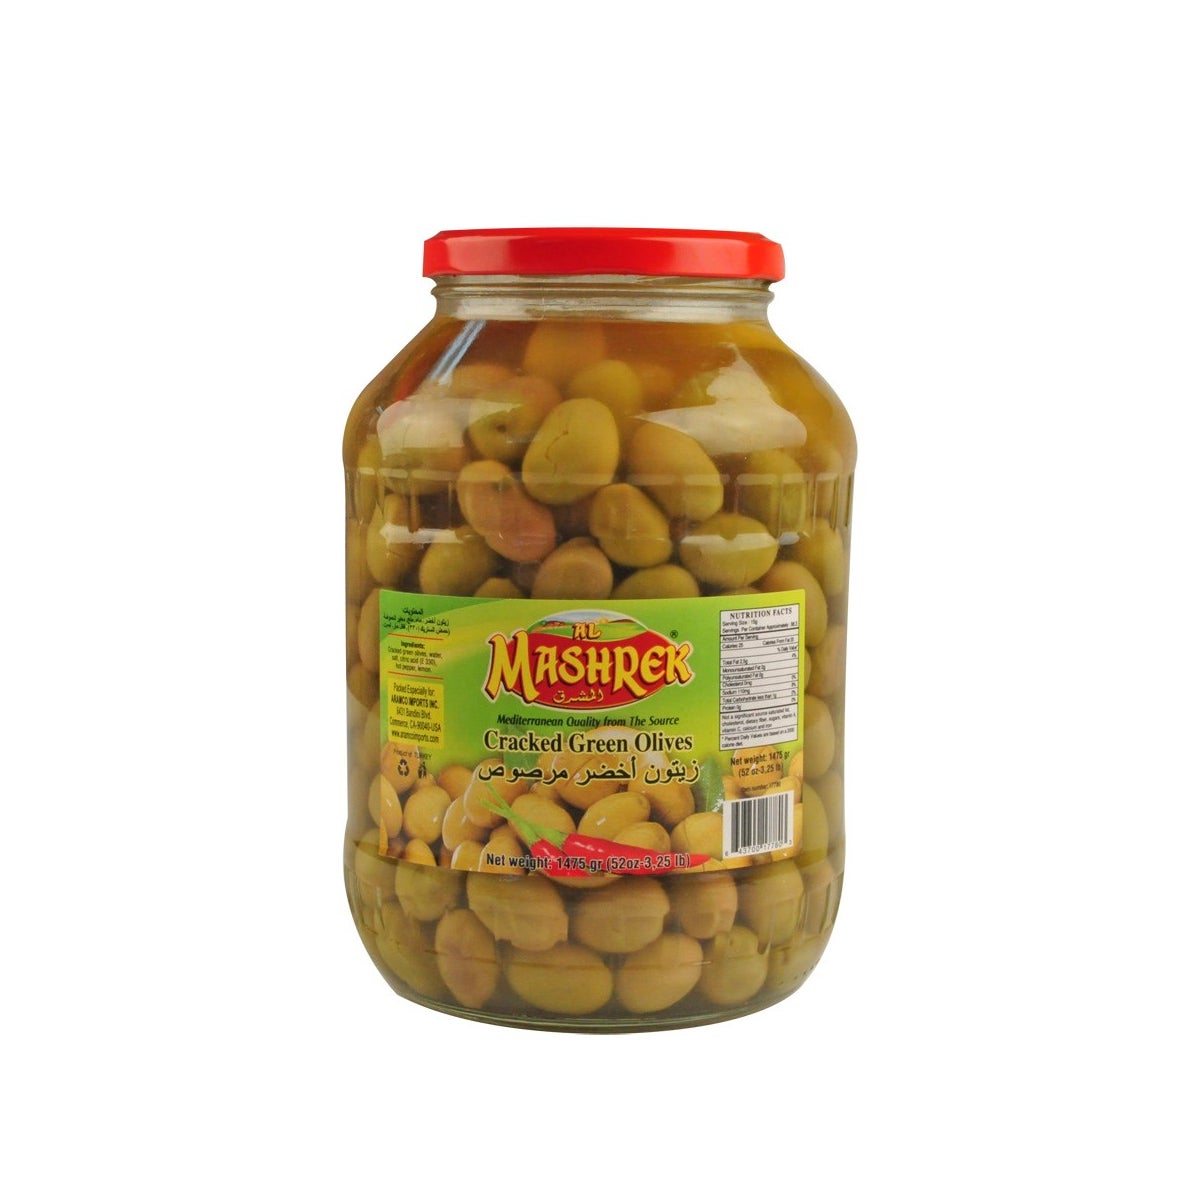 Al Mashrek Cracked Green Olives 52oz 1.5kg                   643700177803